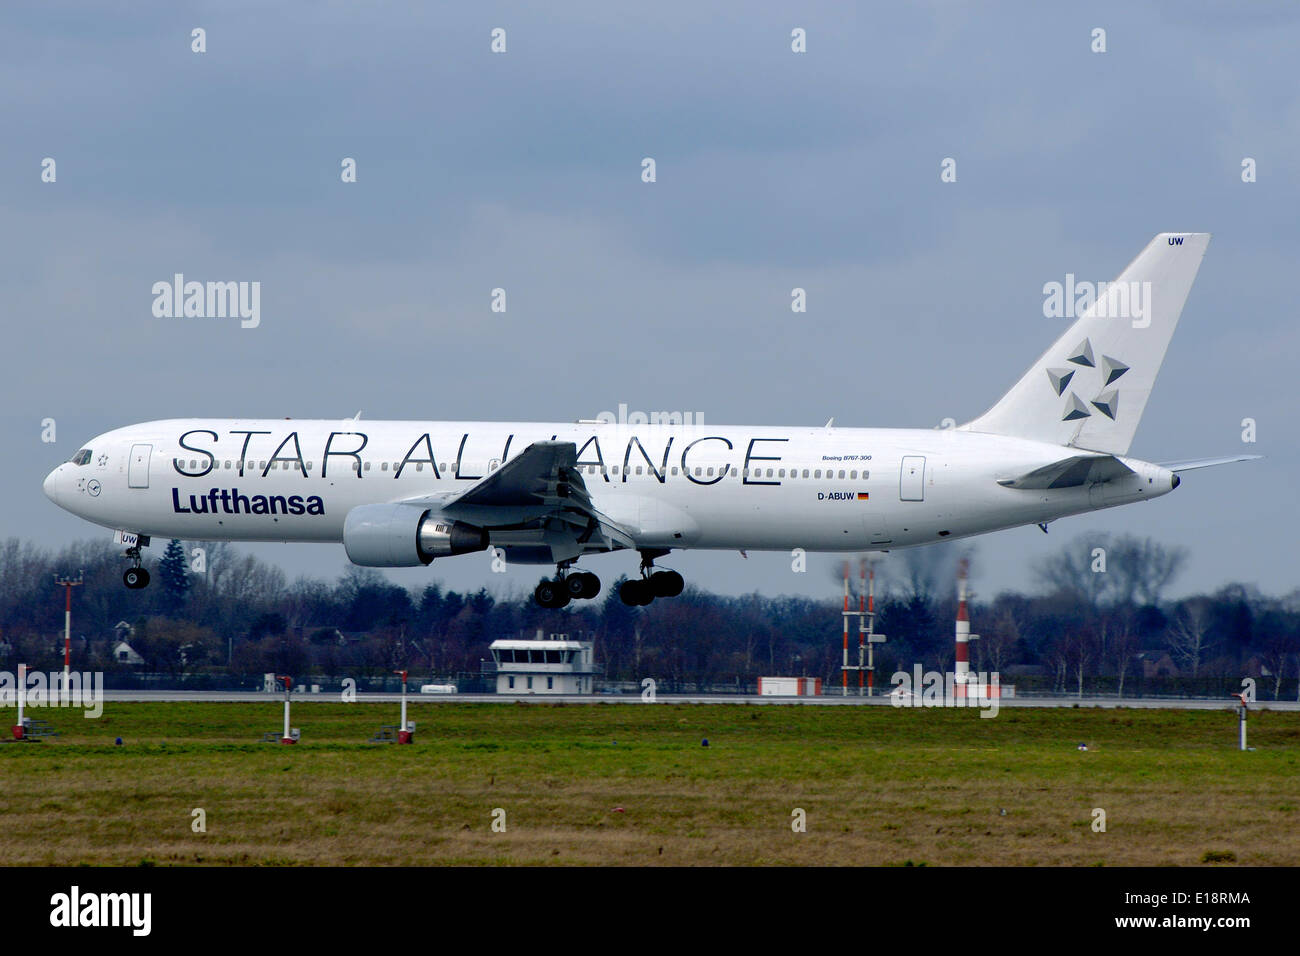 Un Boeing 767-300 passeggeri aerei della compagnia aerea tedesca Lufthansa è in atterraggio a Dusseldorf-Lohausen aeroporto, sporting Star Alliance livrea di promozione. Foto Stock